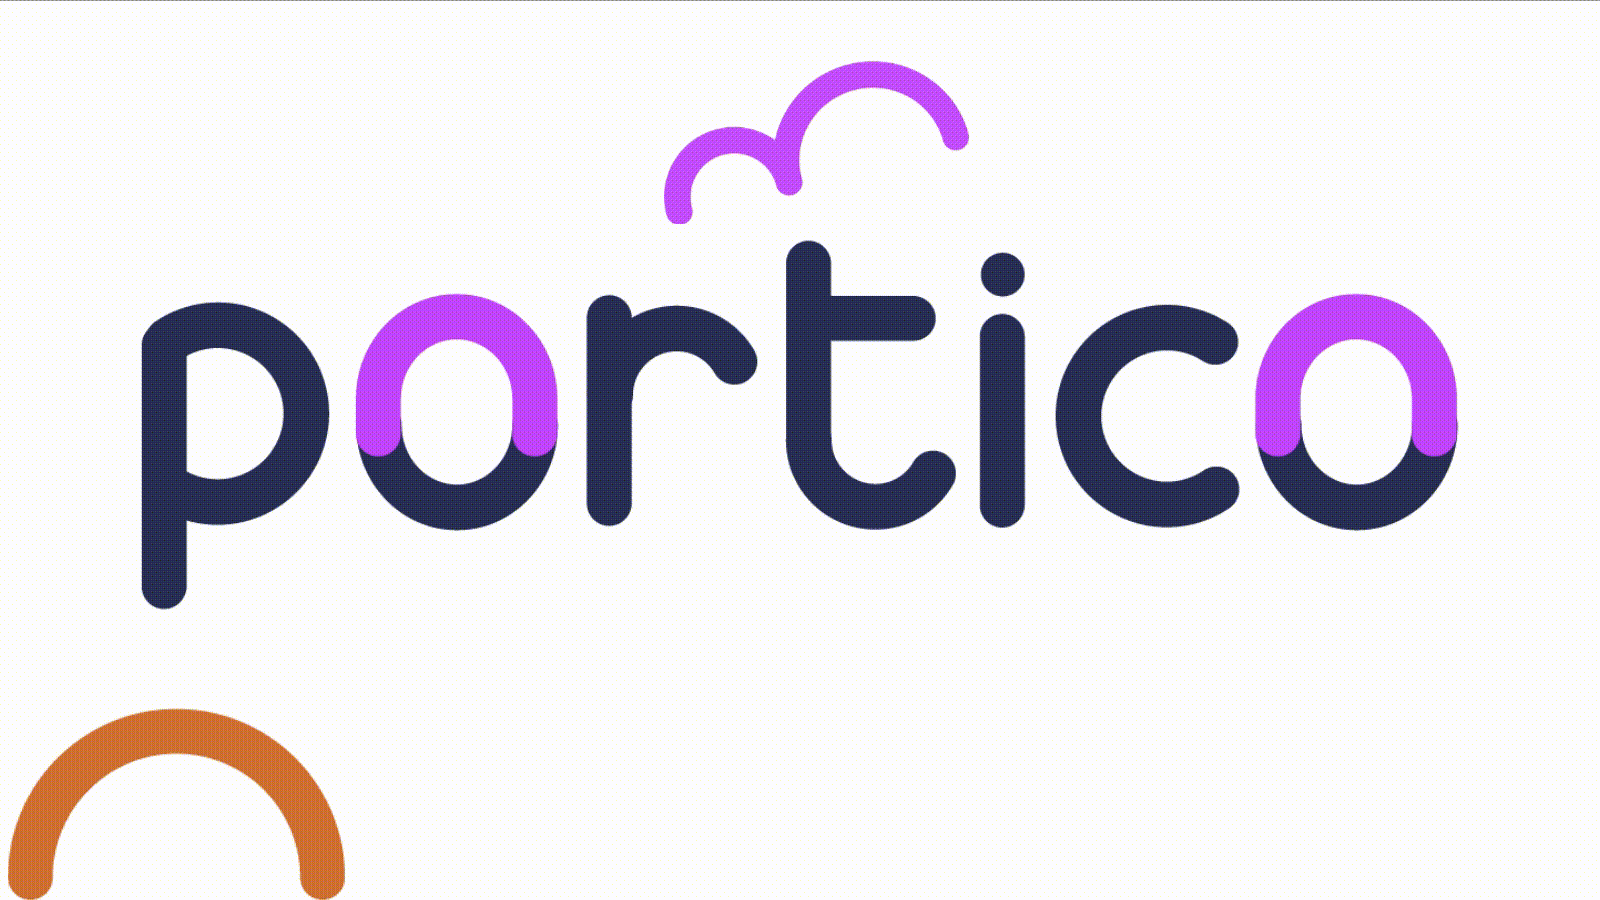 Portico's lettering